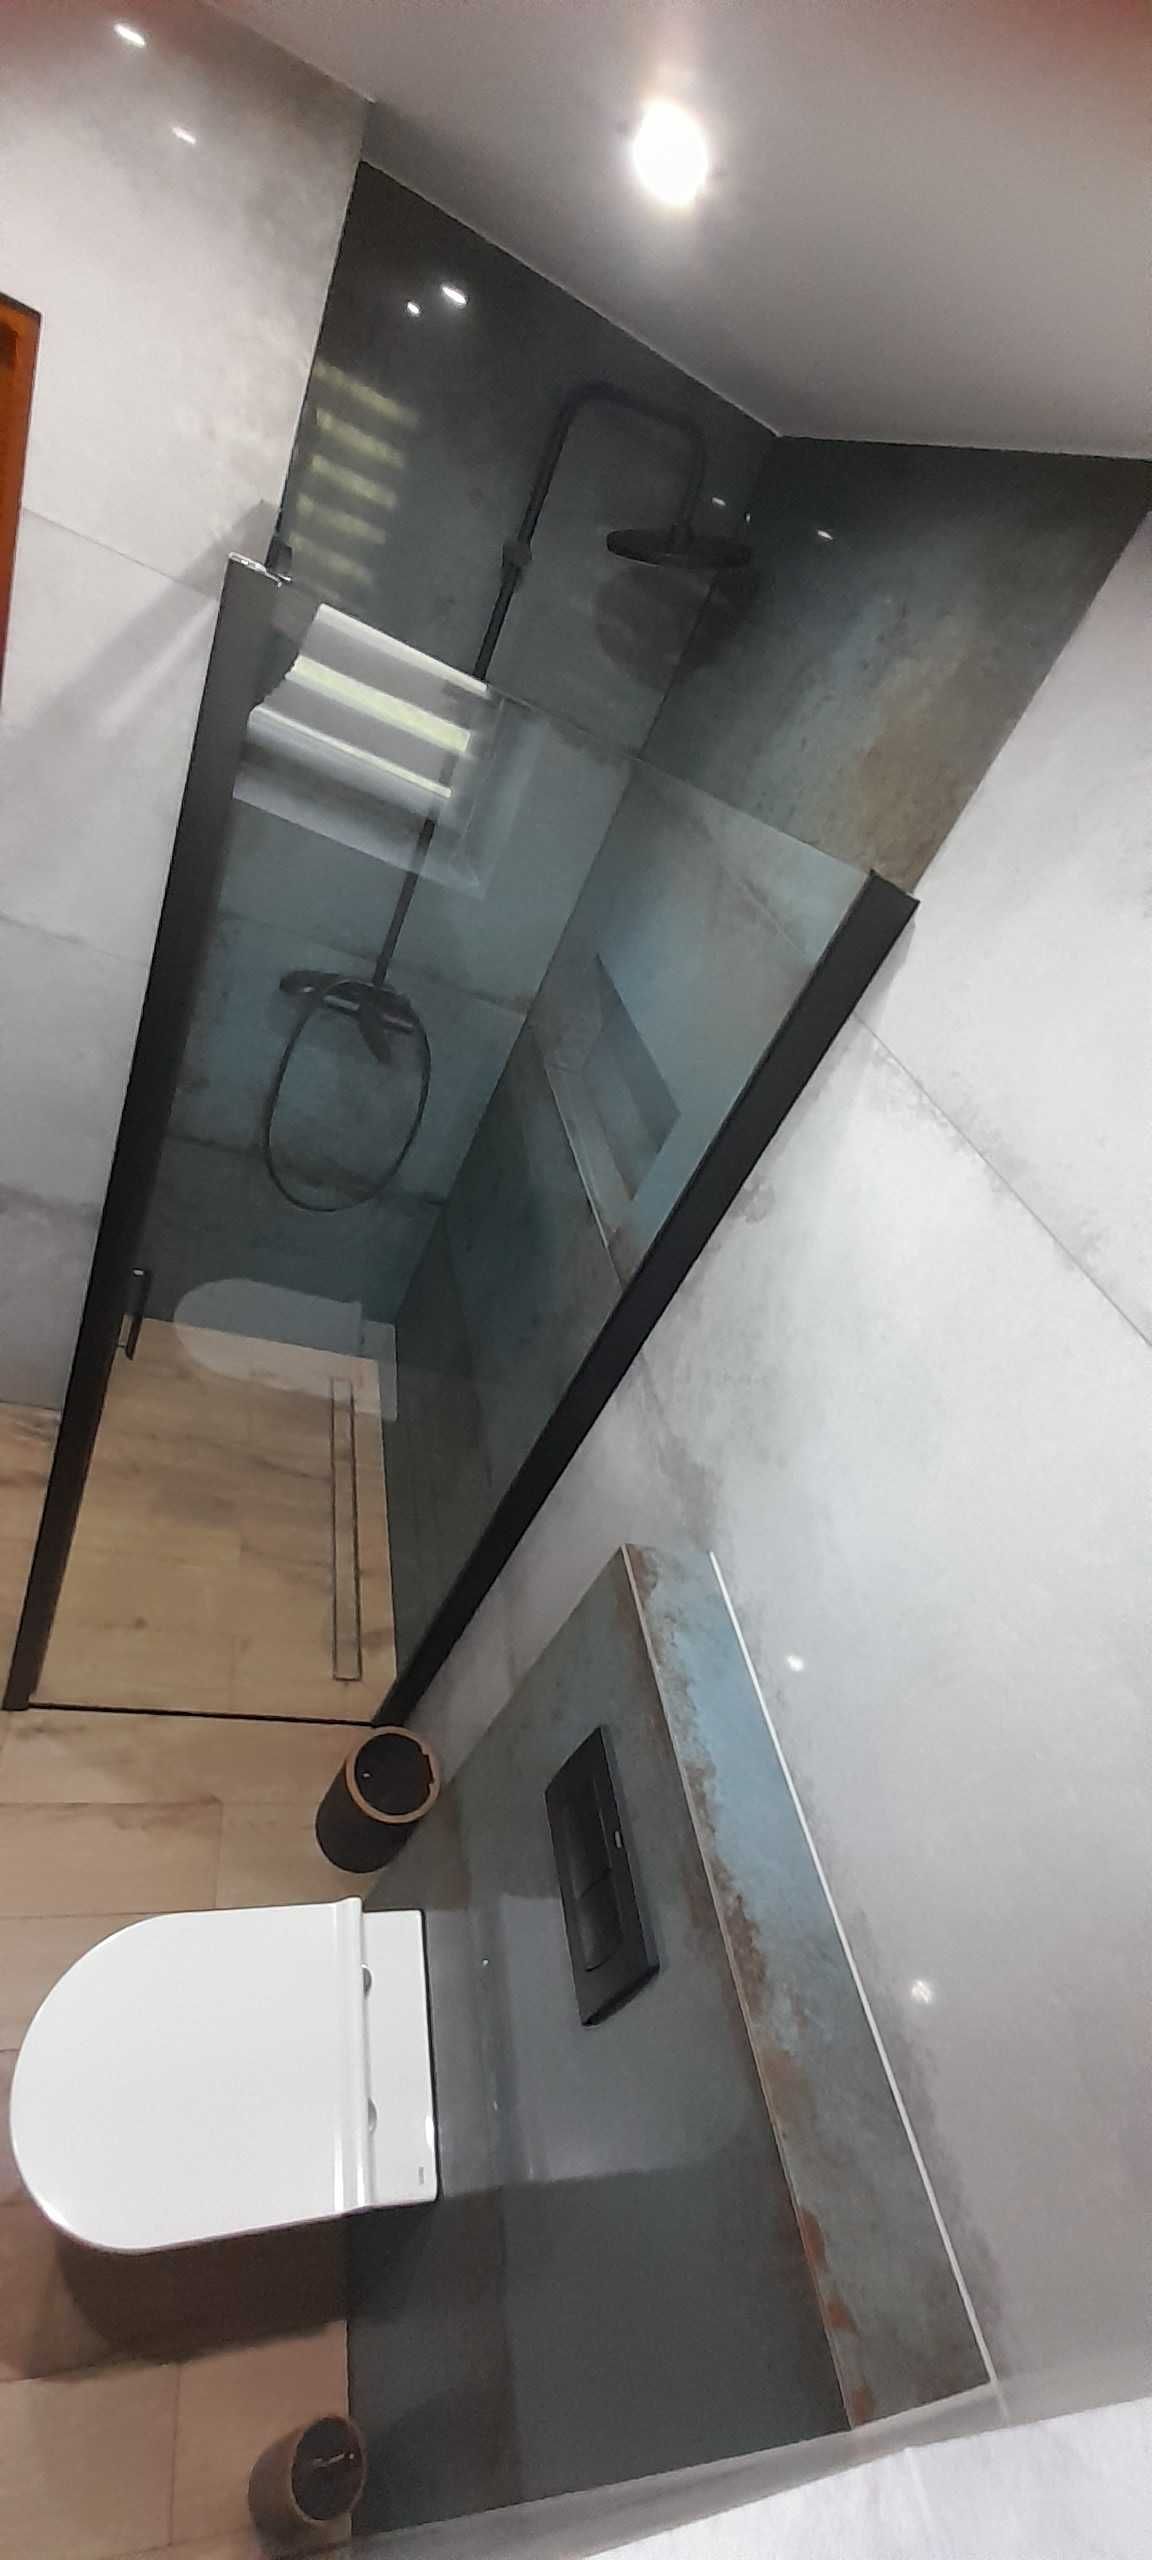 Układanie płytek kompleksowy remont łazienki  szpachlowanie malowanie